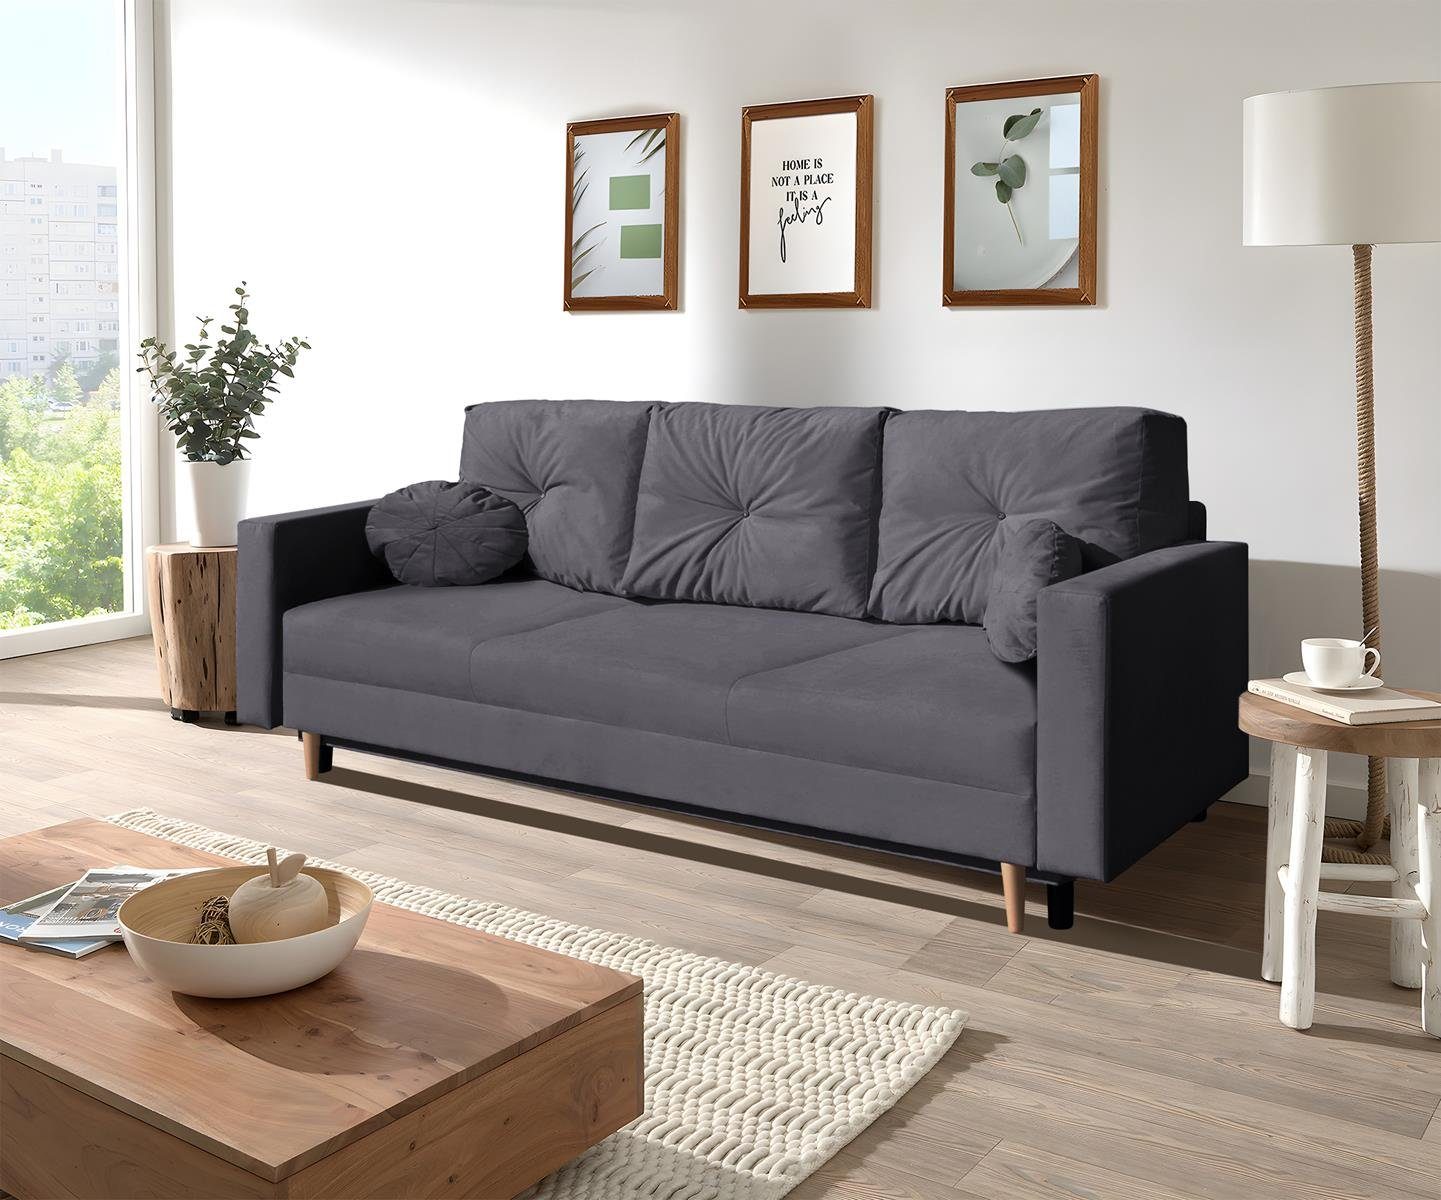 Beautysofa 3-Sitzer MILAN, skandinavisches Design, Wellenunterfederung, Bettkasten, Holzbeine, 3-Sitzer Sofa mit Relaxfunktion Grau (trinity 15)